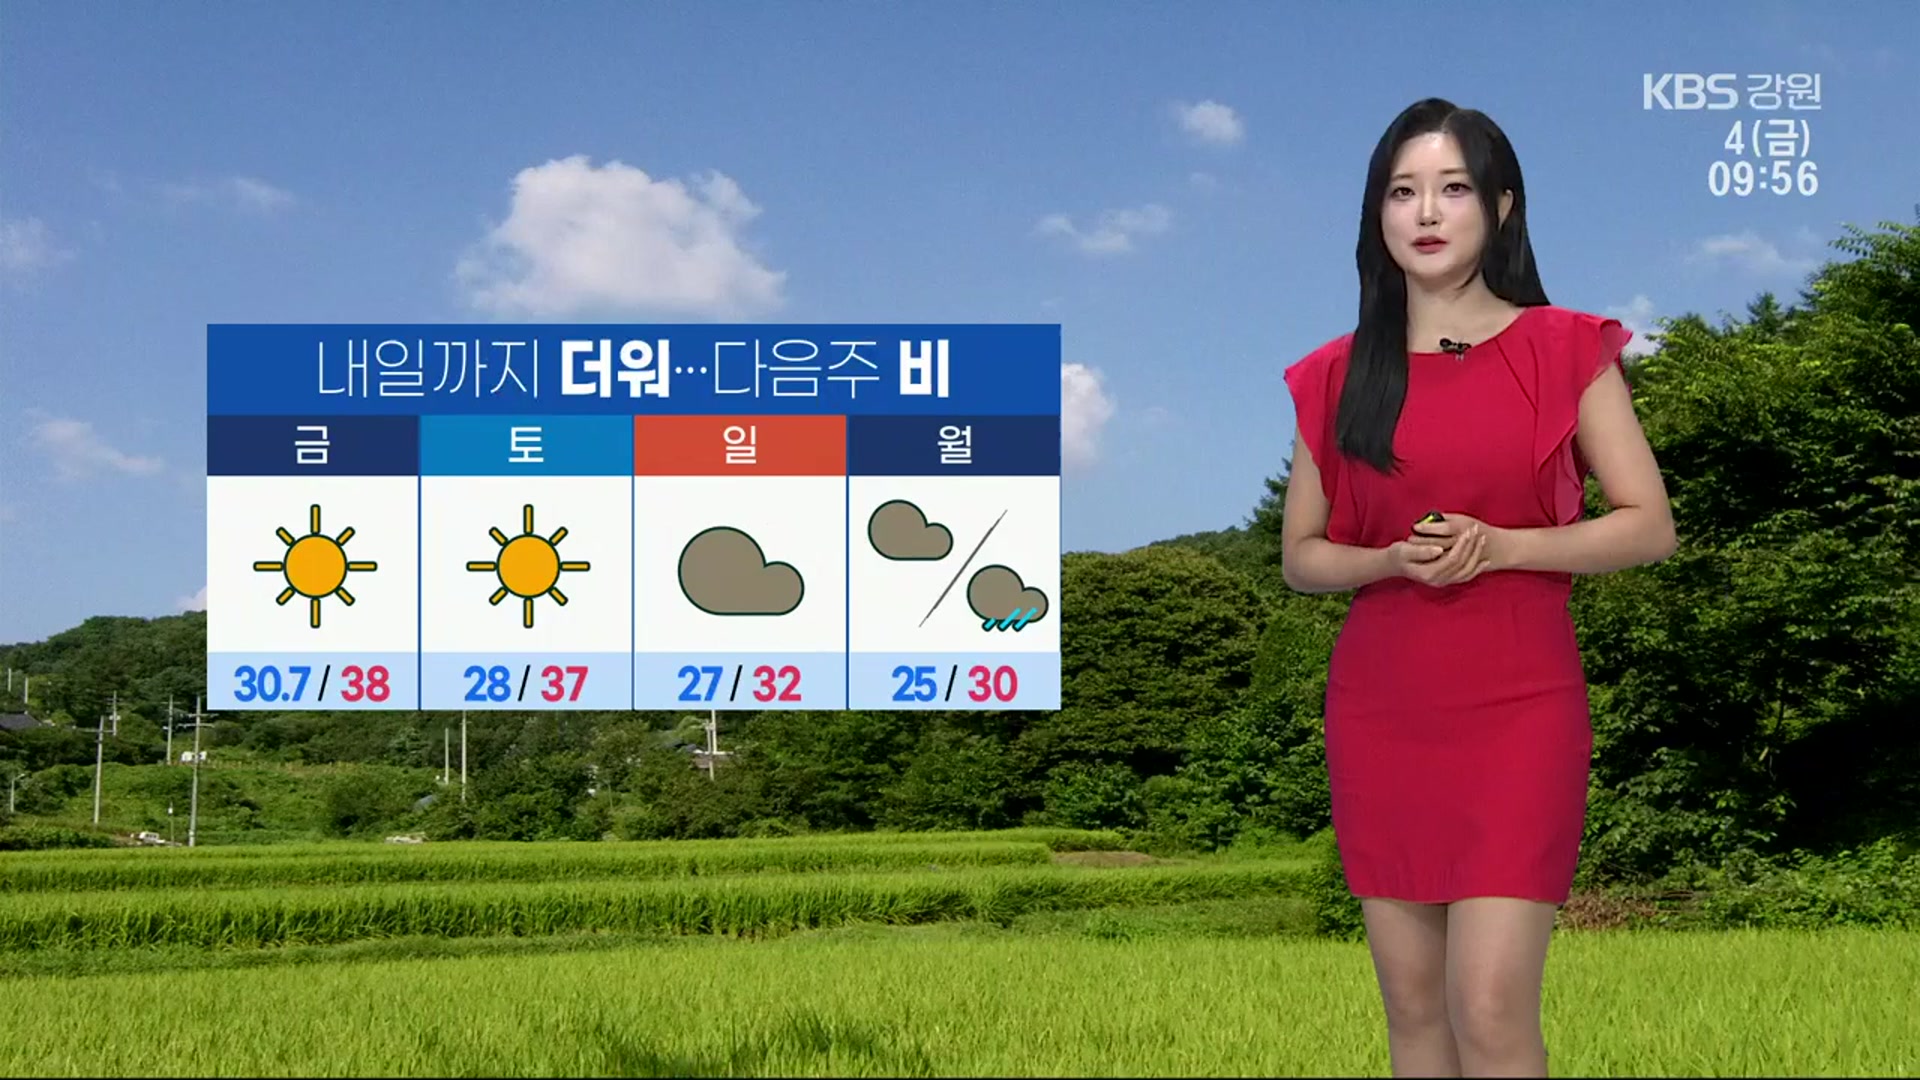 [날씨] ‘강릉 한낮 38도’ 오늘도 더워…비 내리기 전 폭염 계속